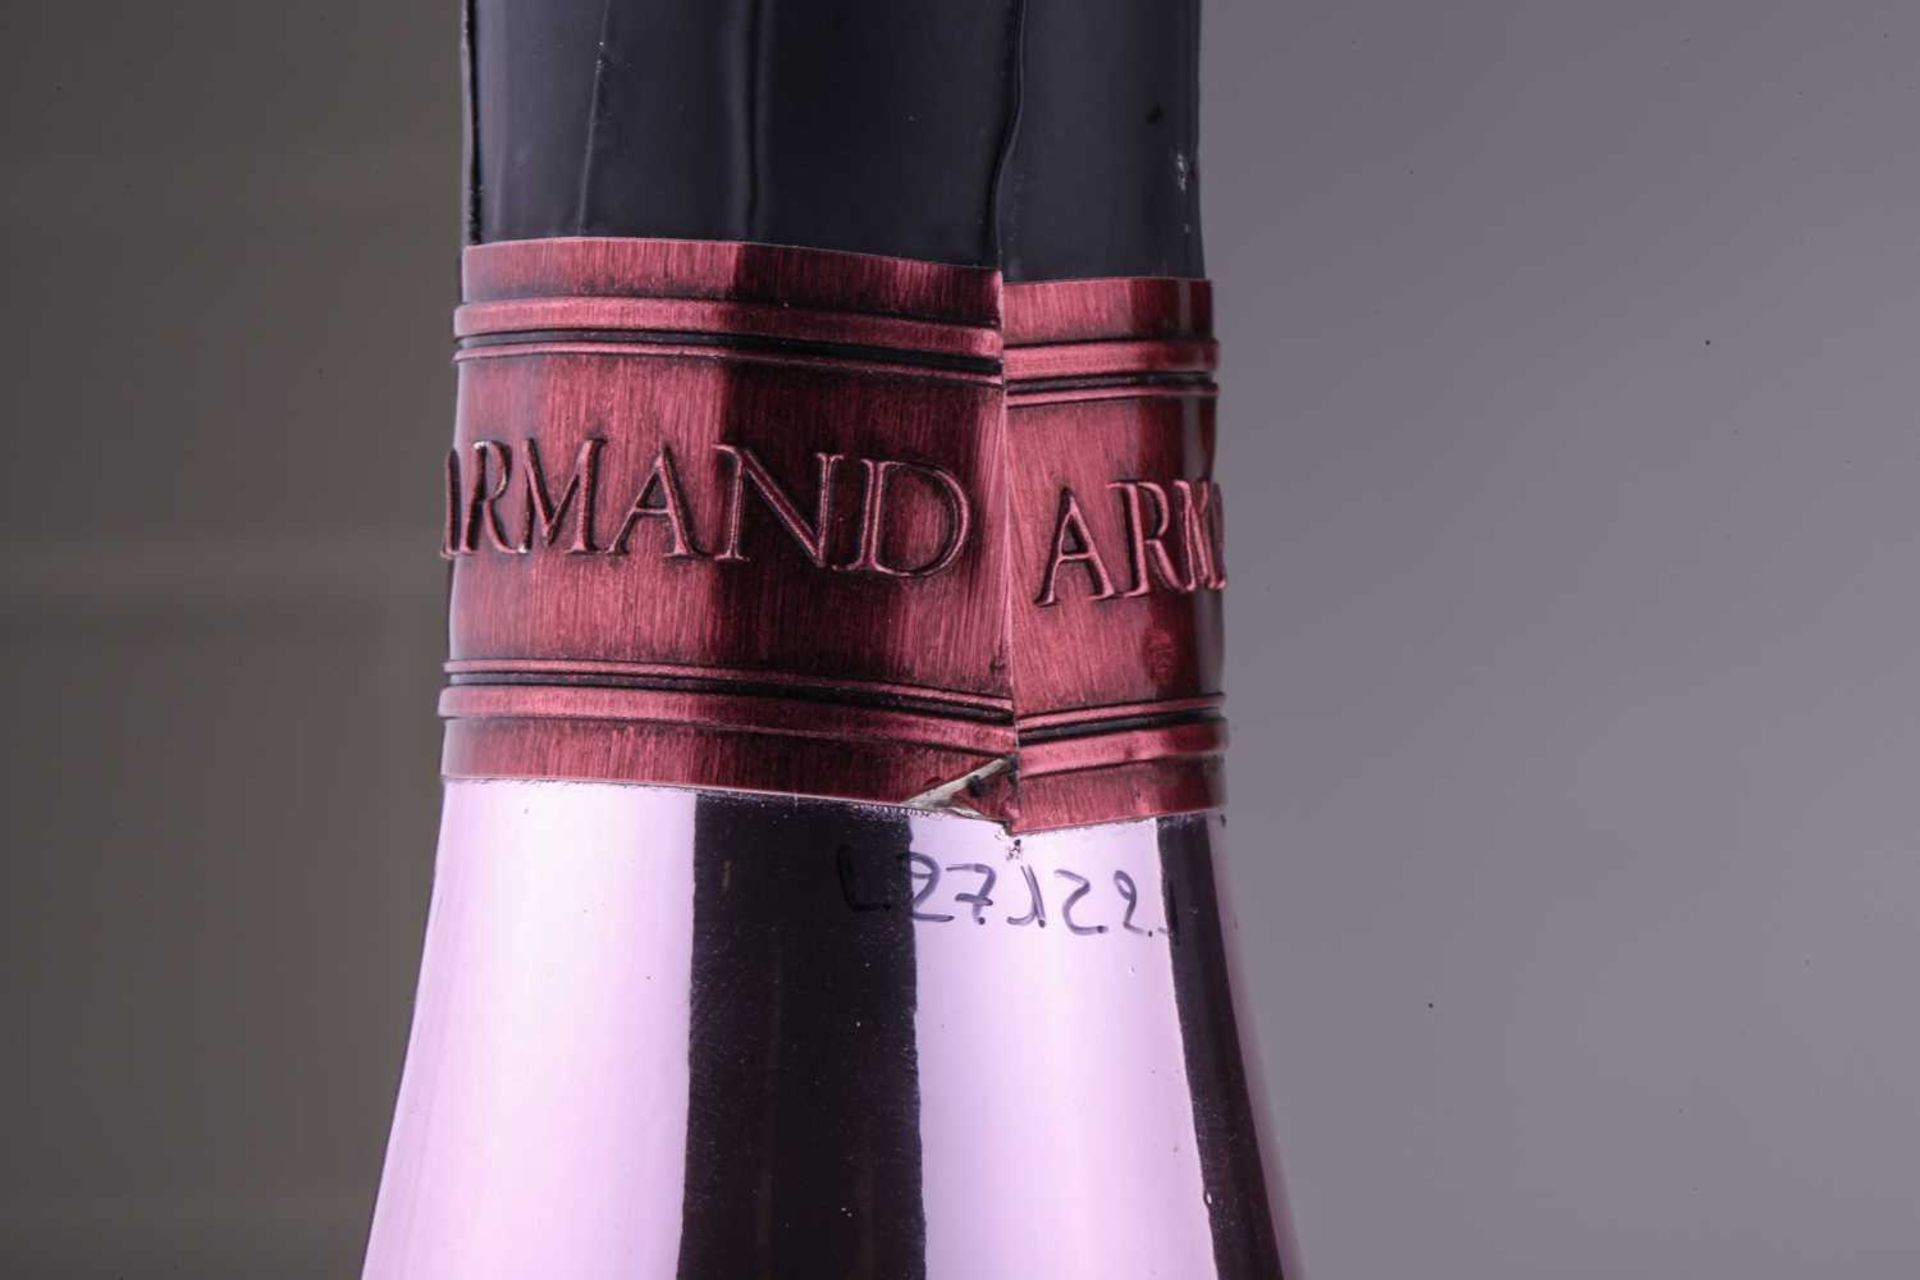 A Jeroboam of Cattier Armand de Brignac Ace of Spades Brut Rose Champagne, 3lt, 12.5%Private - Bild 6 aus 11